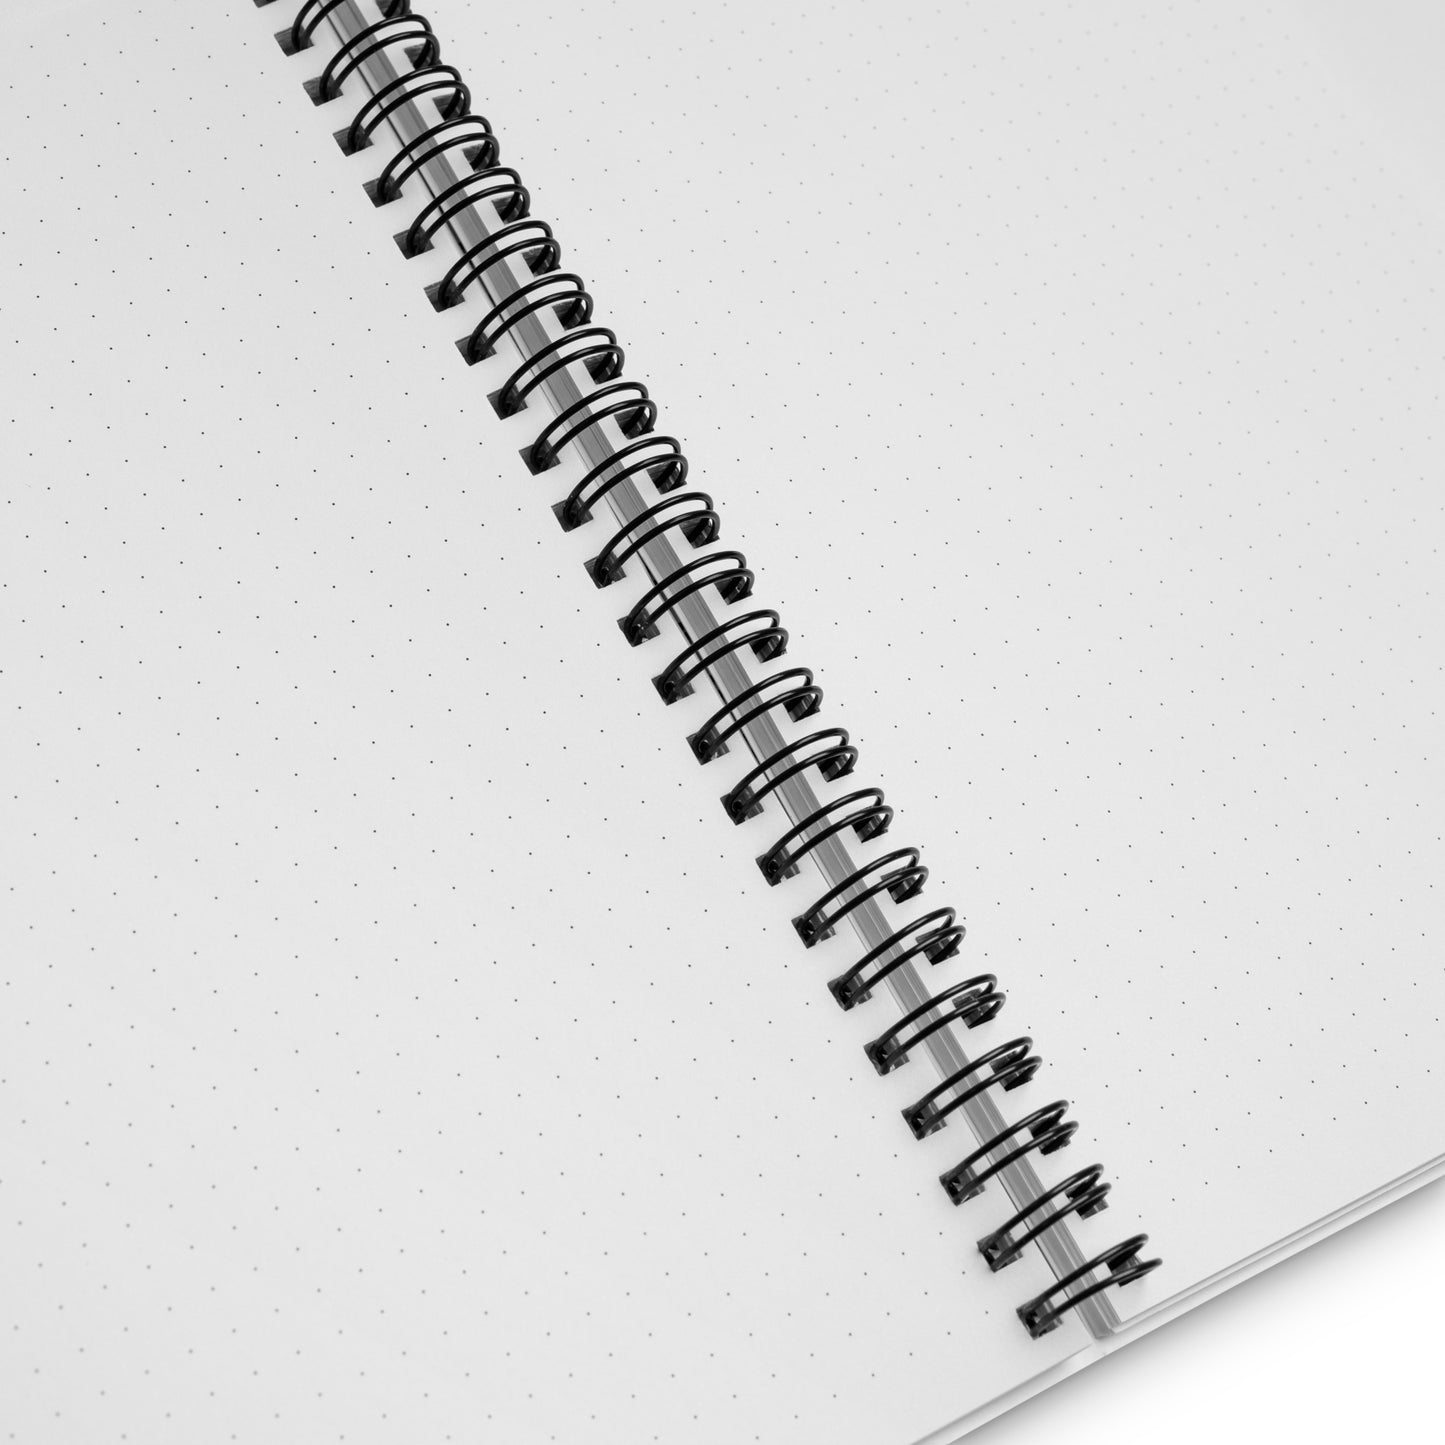 Spiral notebook my bff